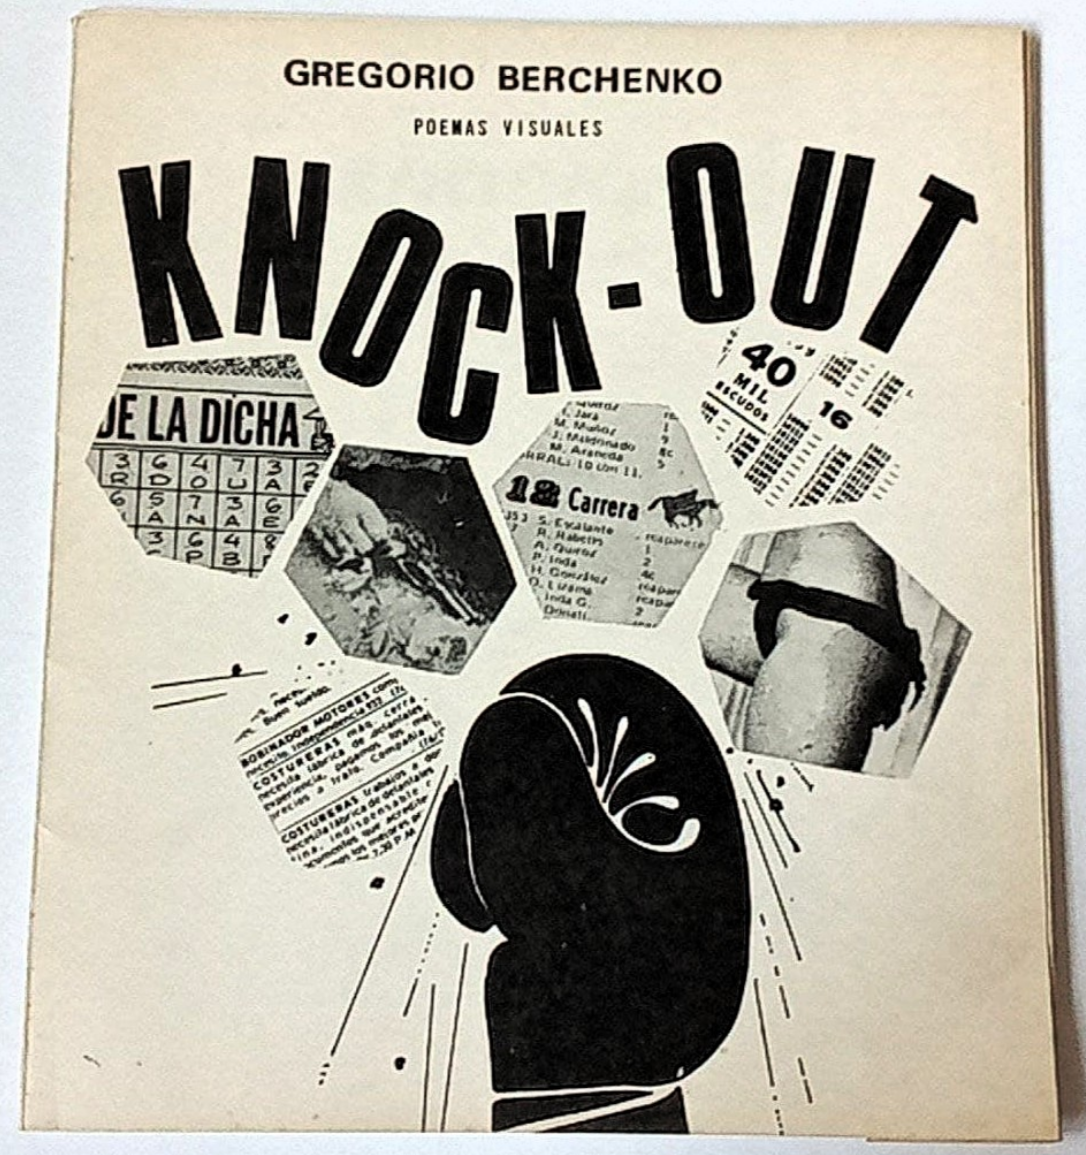 Gregorio Berchenko. Knock-Out. Poemas Visuales